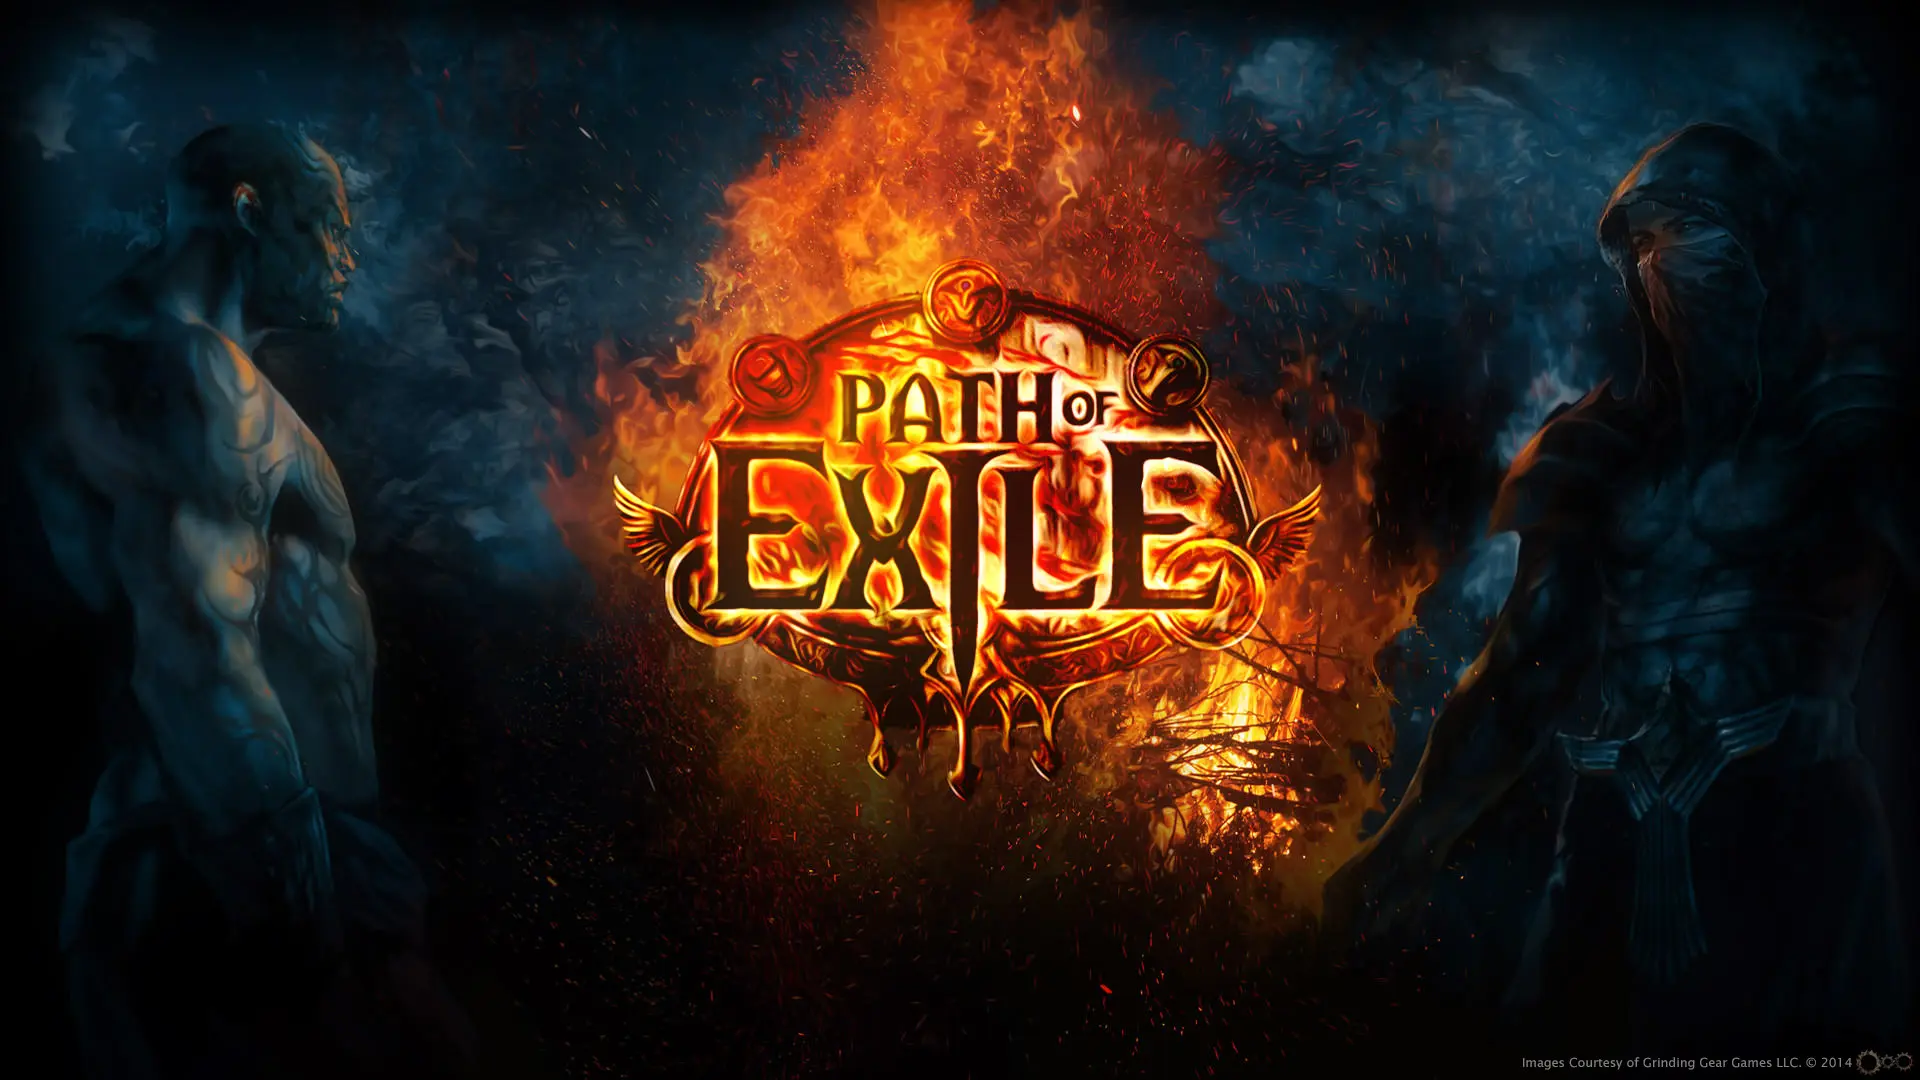 لوگو Path of Exile